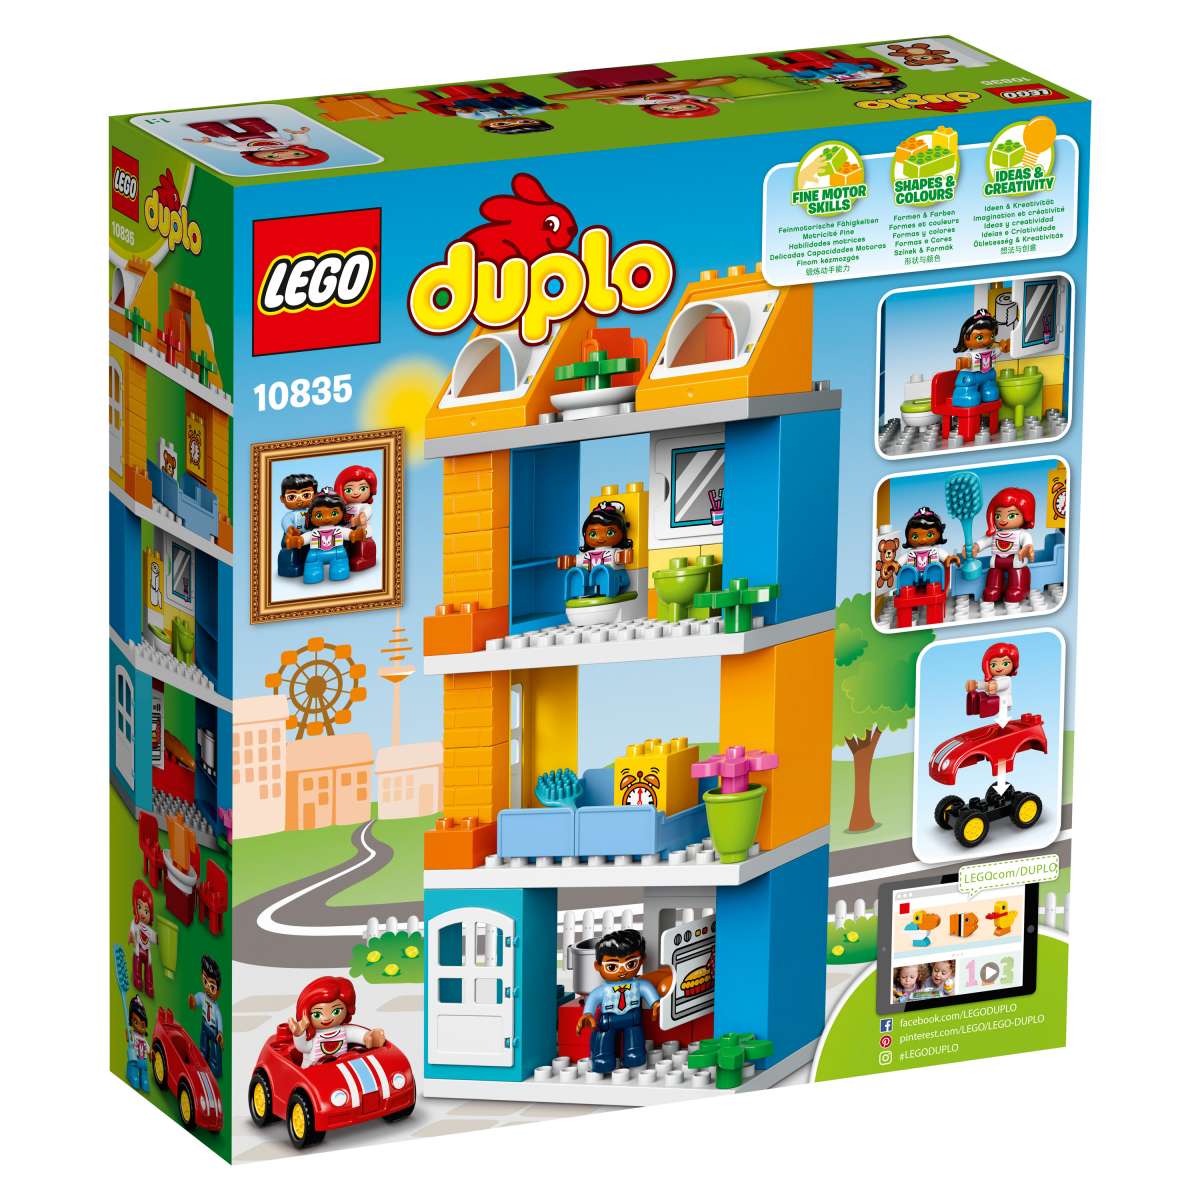 LEGO® DUPLO® 10835 Familienhaus günstig kaufen | brickstore.at